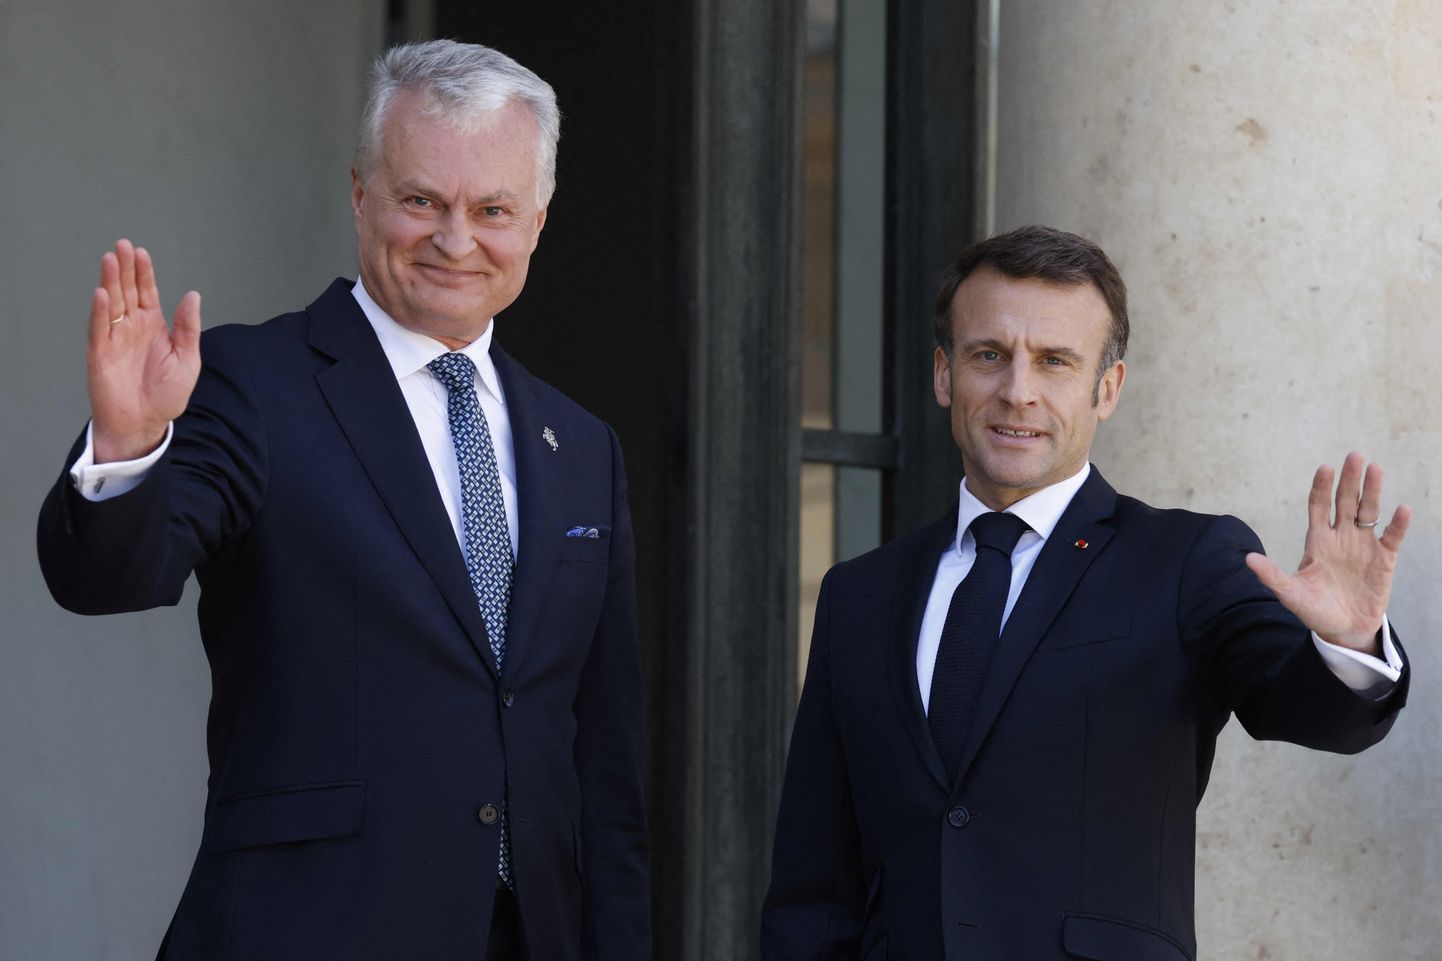 Leedu president Gitanas Nausėda (vasakul) ja Prantsuse president Emmanuel Macron (paremal) Pariisis 24. mai 2023.